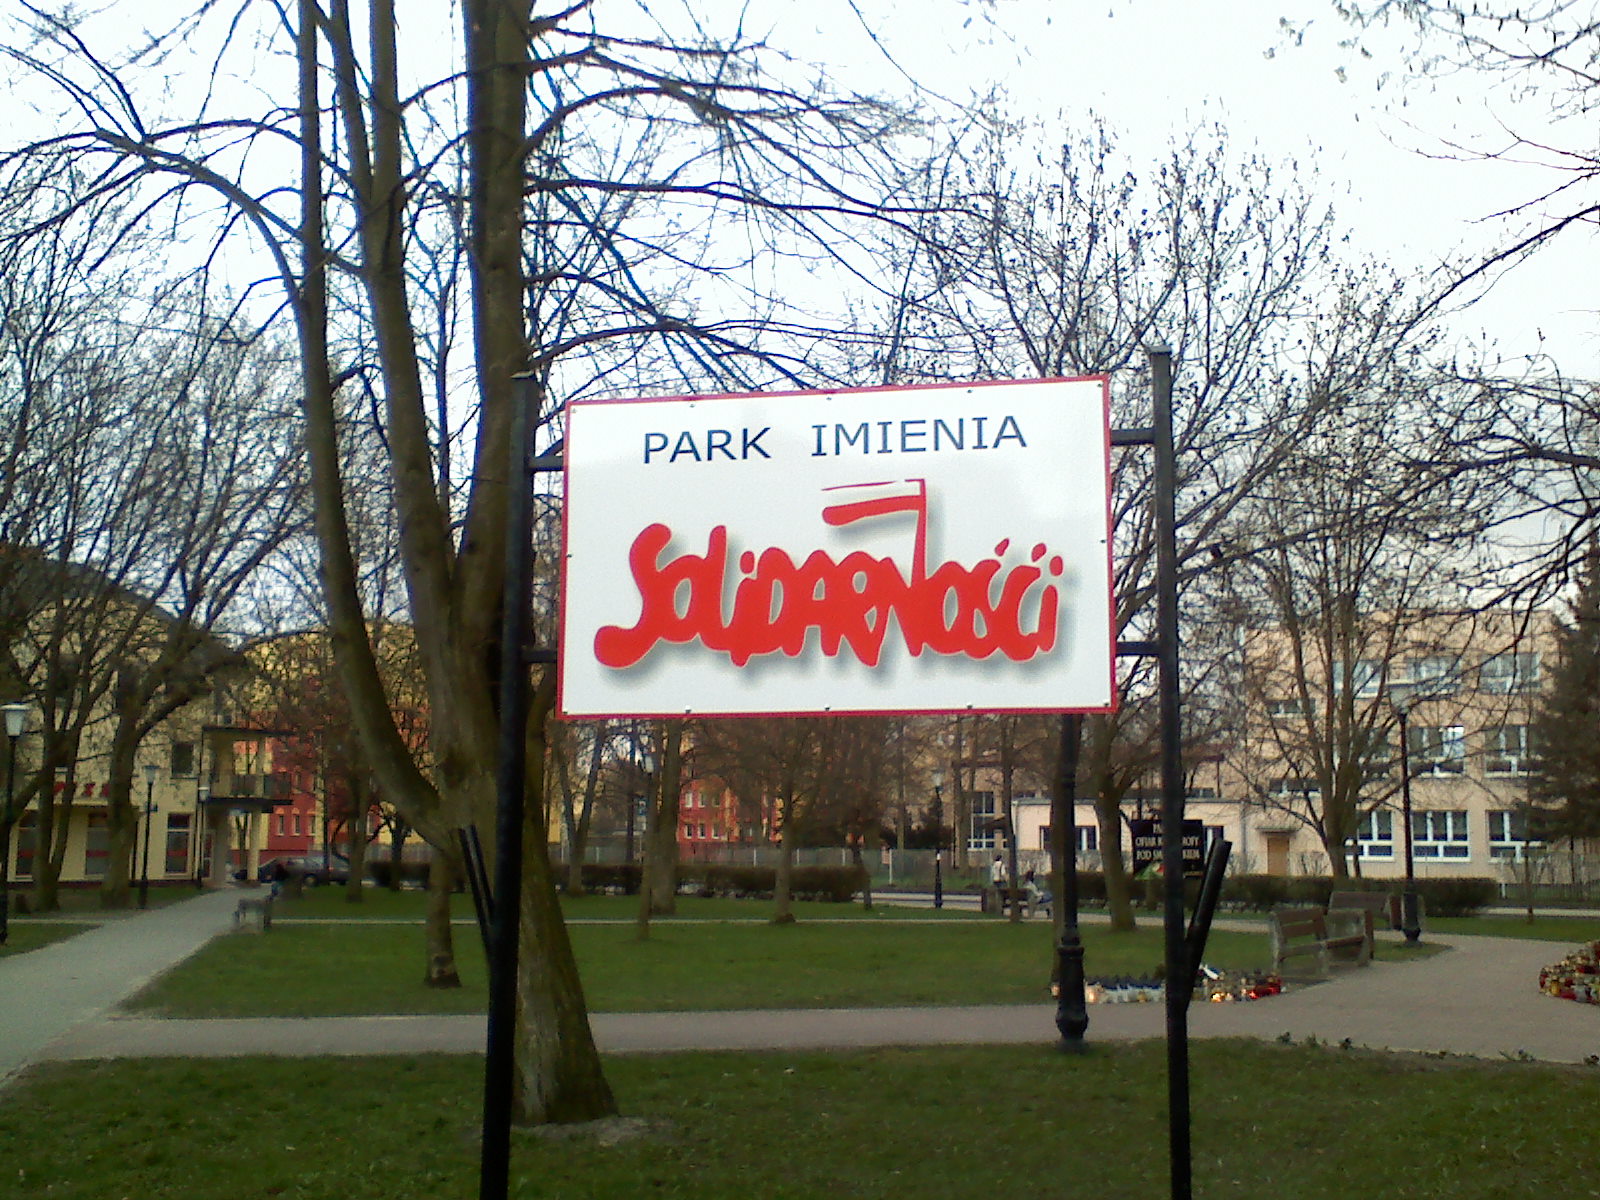 Pamitamy..., Park im. Solidarnoci, kwiecie 2010 r.